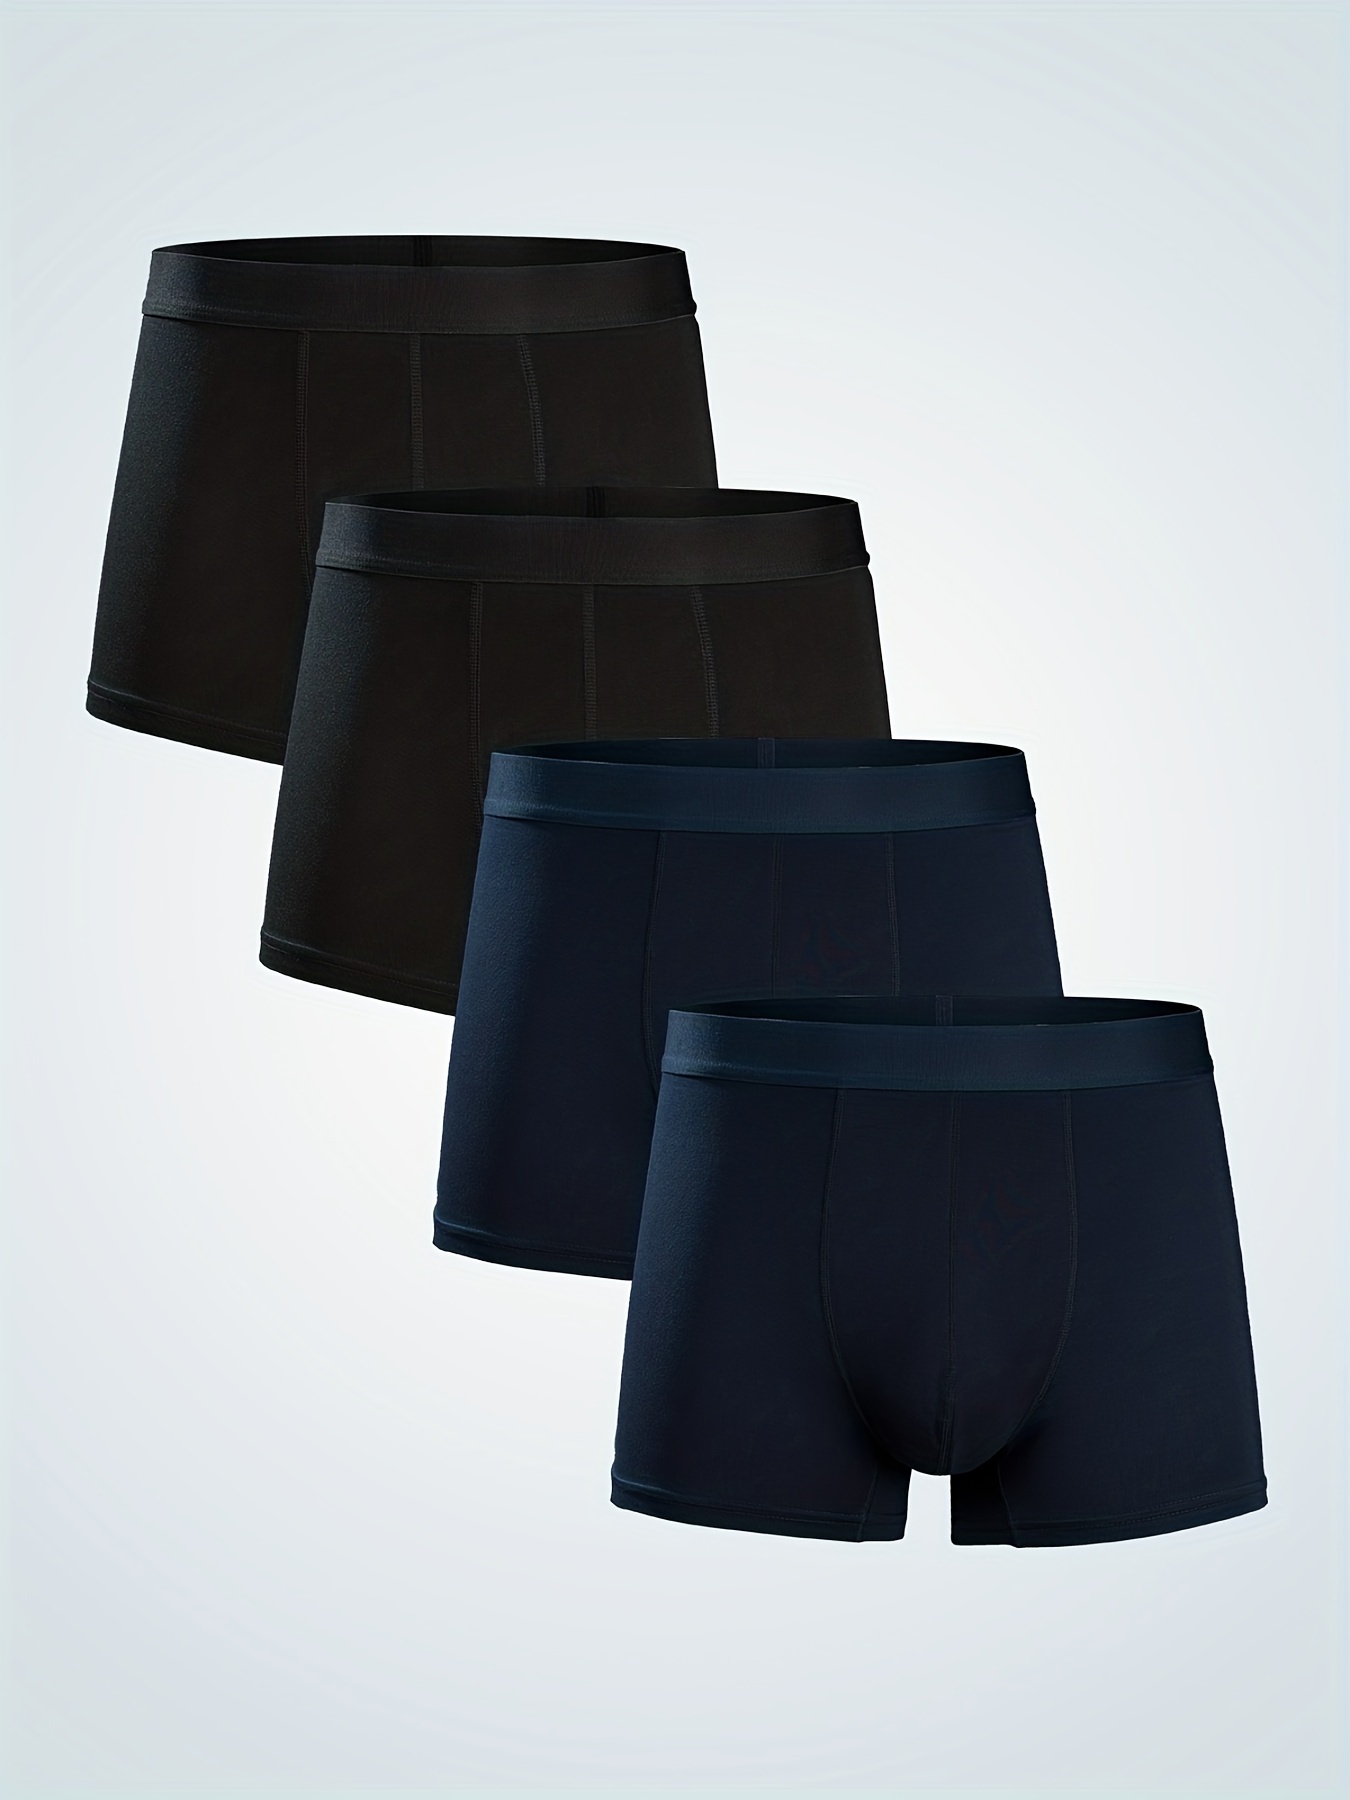 Modal Plain Premium Mens Underwear, Type: Briefs at Rs 209/piece